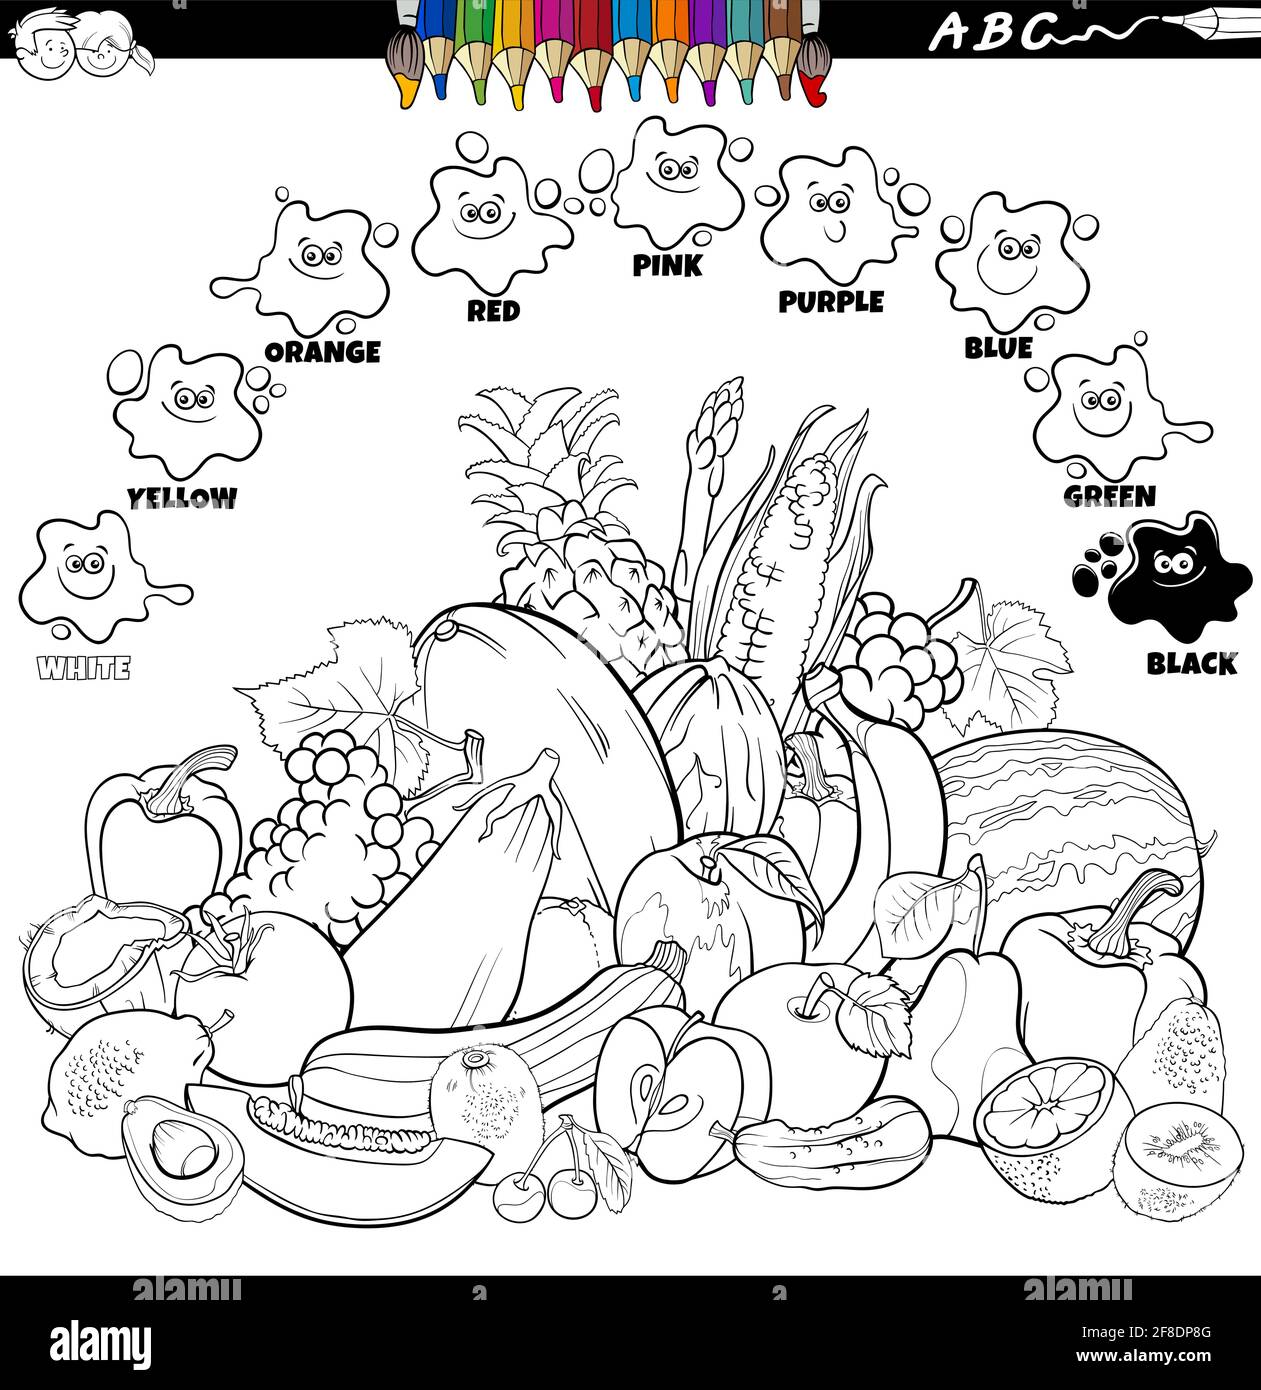 Illustration de dessin animé éducatif noir et blanc de couleurs de base pour les enfants avec des légumes et des fruits livre de coloriage de groupe d'objets alimentaires page Illustration de Vecteur